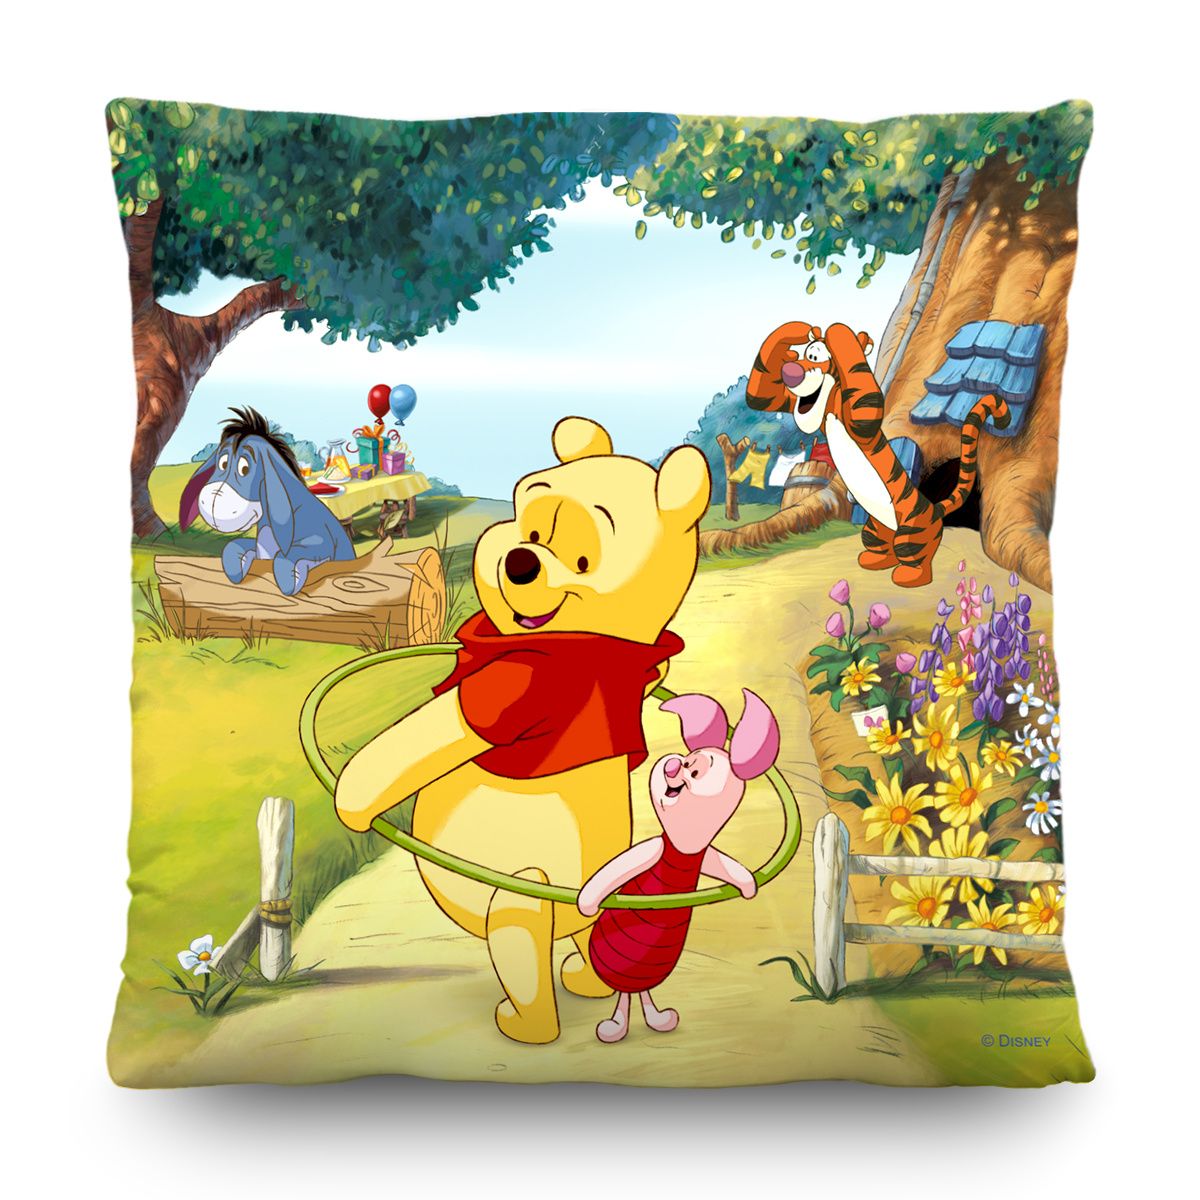 AG Art Polštářek Winnie The Pooh Disney, 40 x 40 cm - 4home.cz